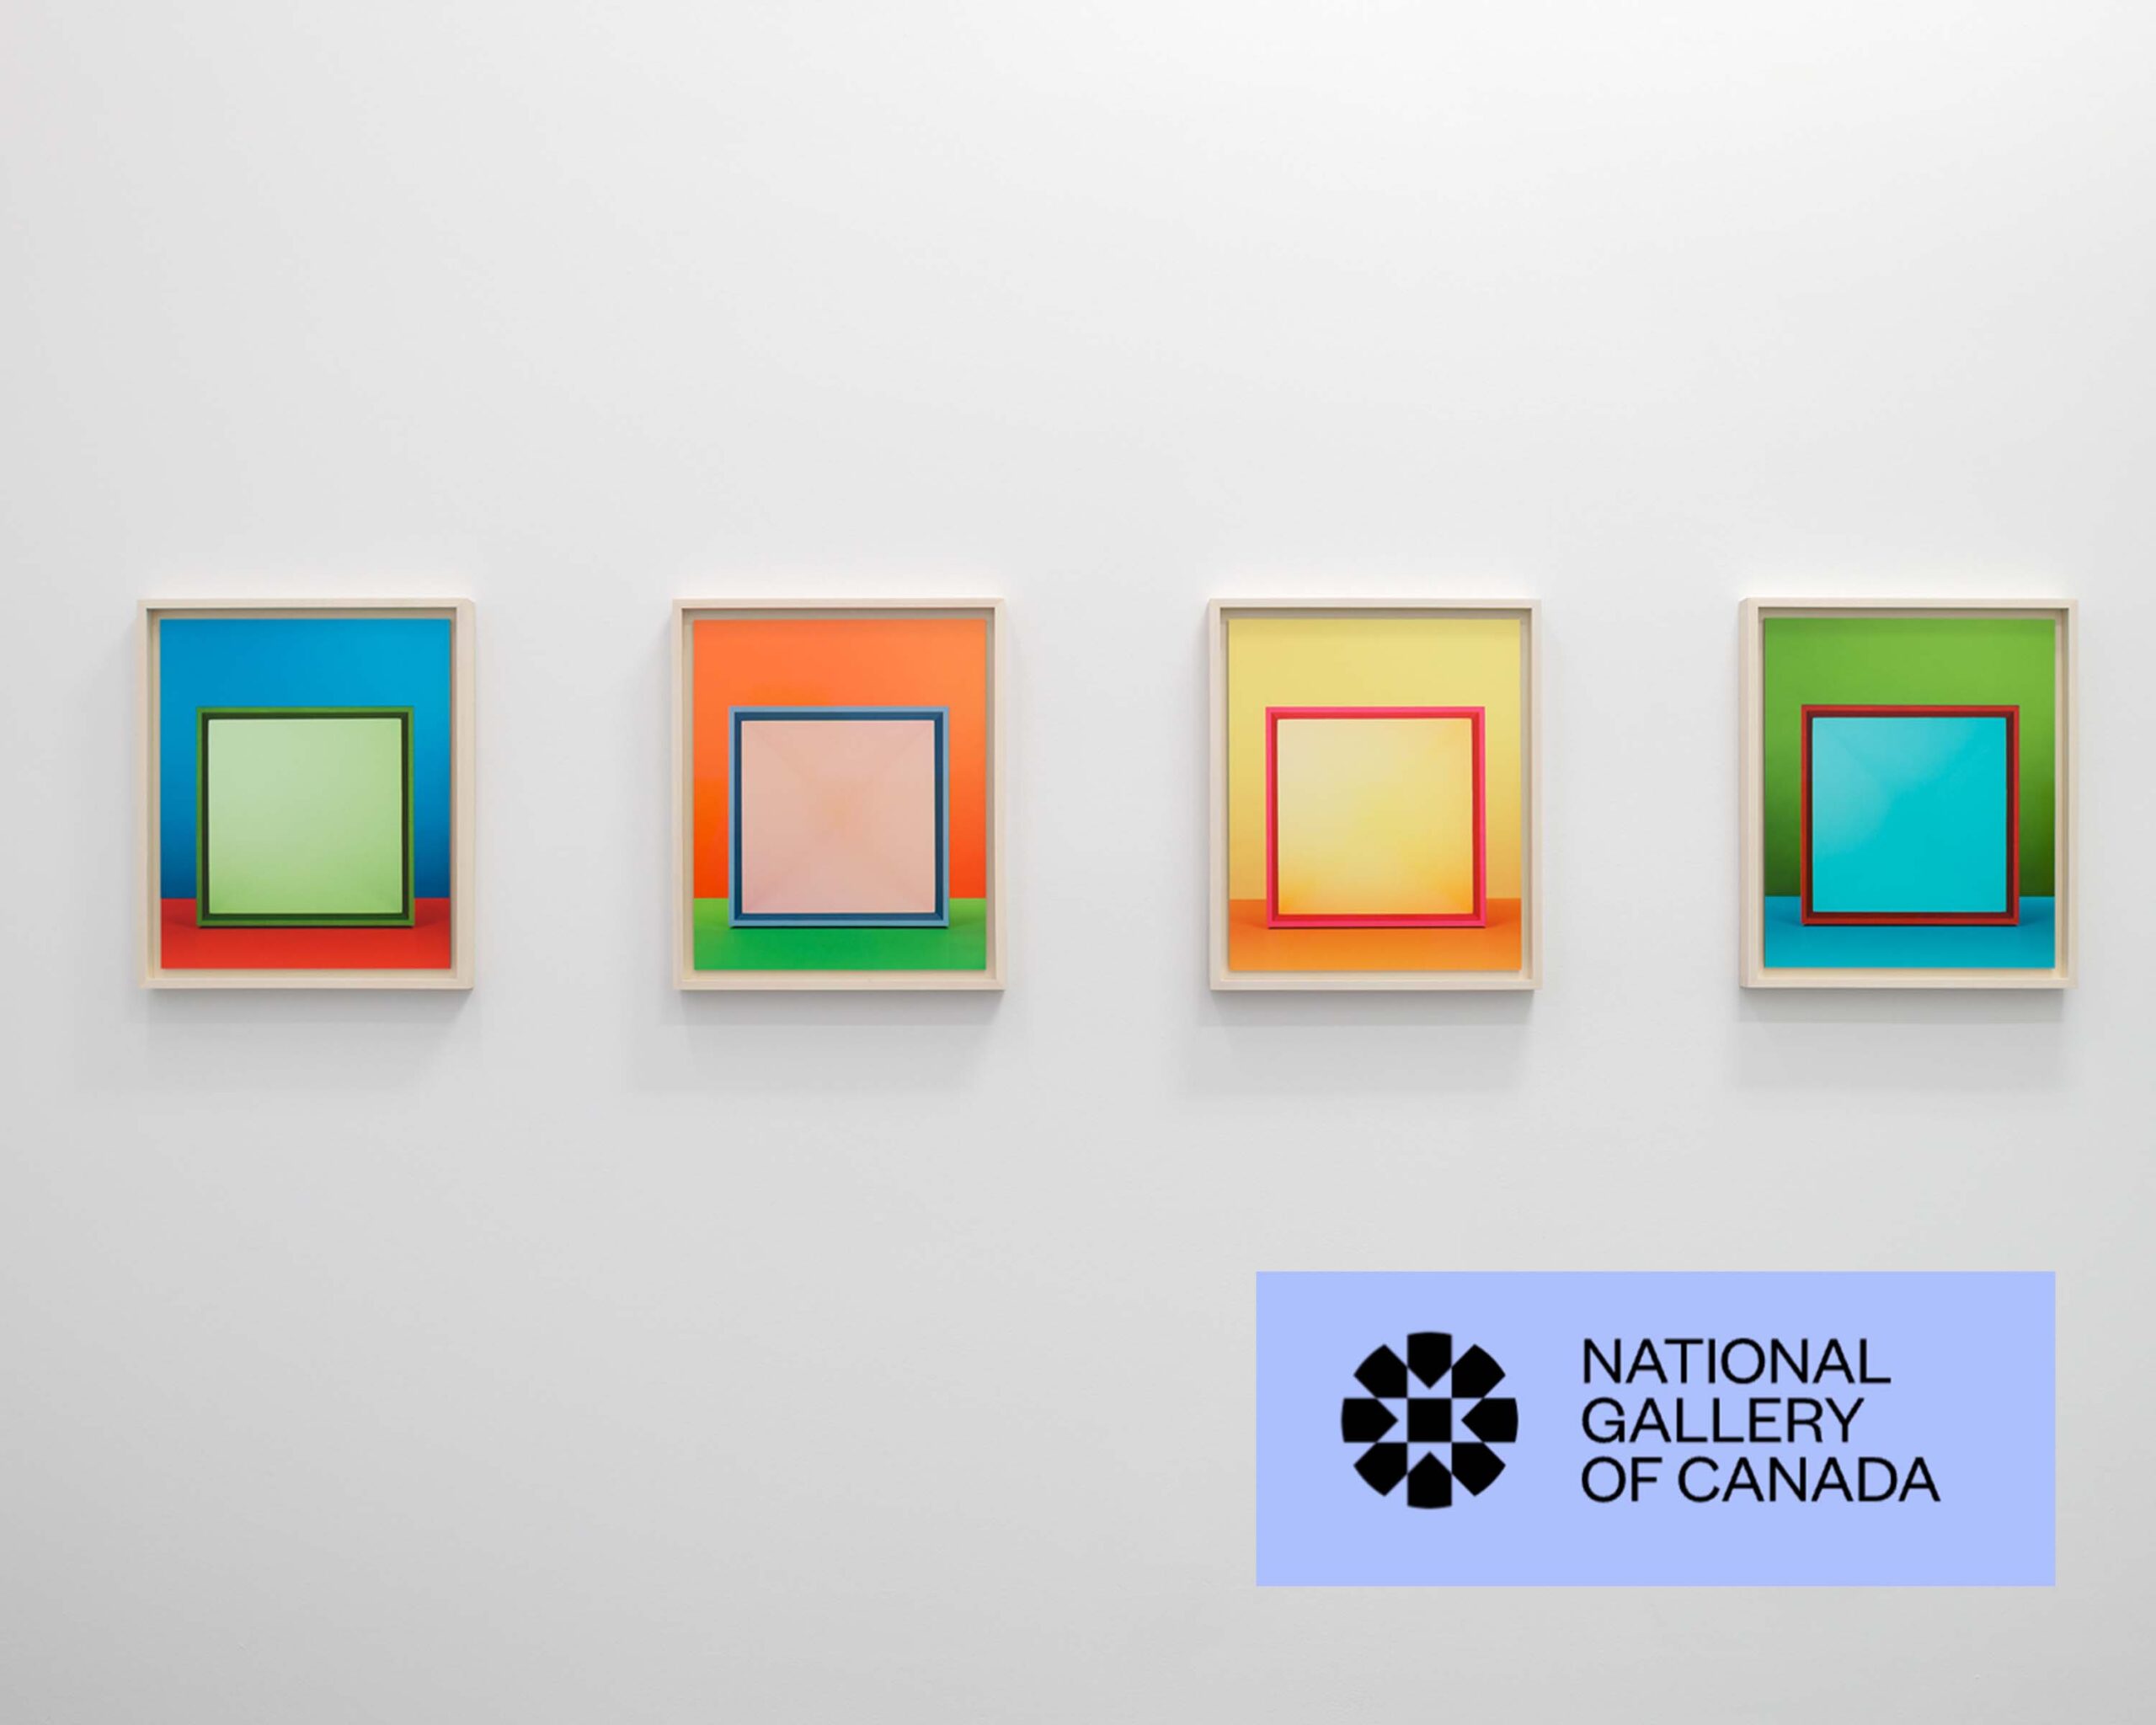 Le Musée des beaux-arts du Canada, 2020 | Mélanger la lumière : la photographie abstraite de Jessica Eaton